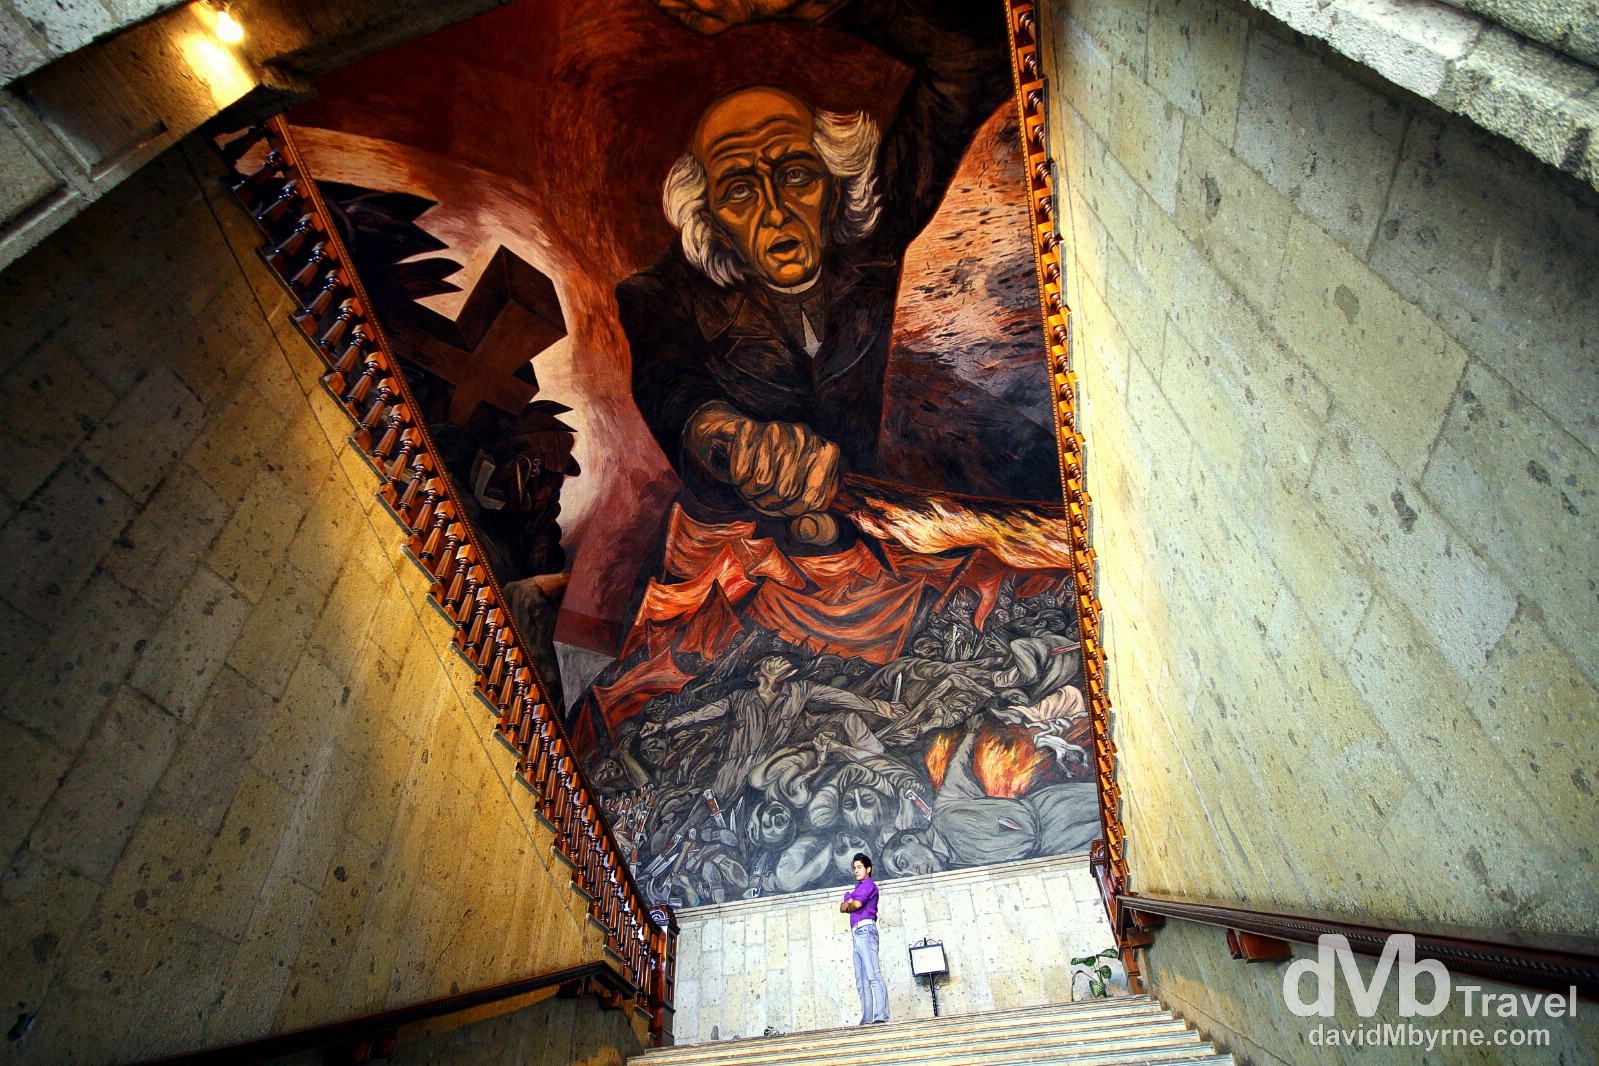 The Jose Clemente Orozoc mural of Miguel Hidalgo in the Placio de Gobierno, Guadalajara, Mexico. April 20th 2013.